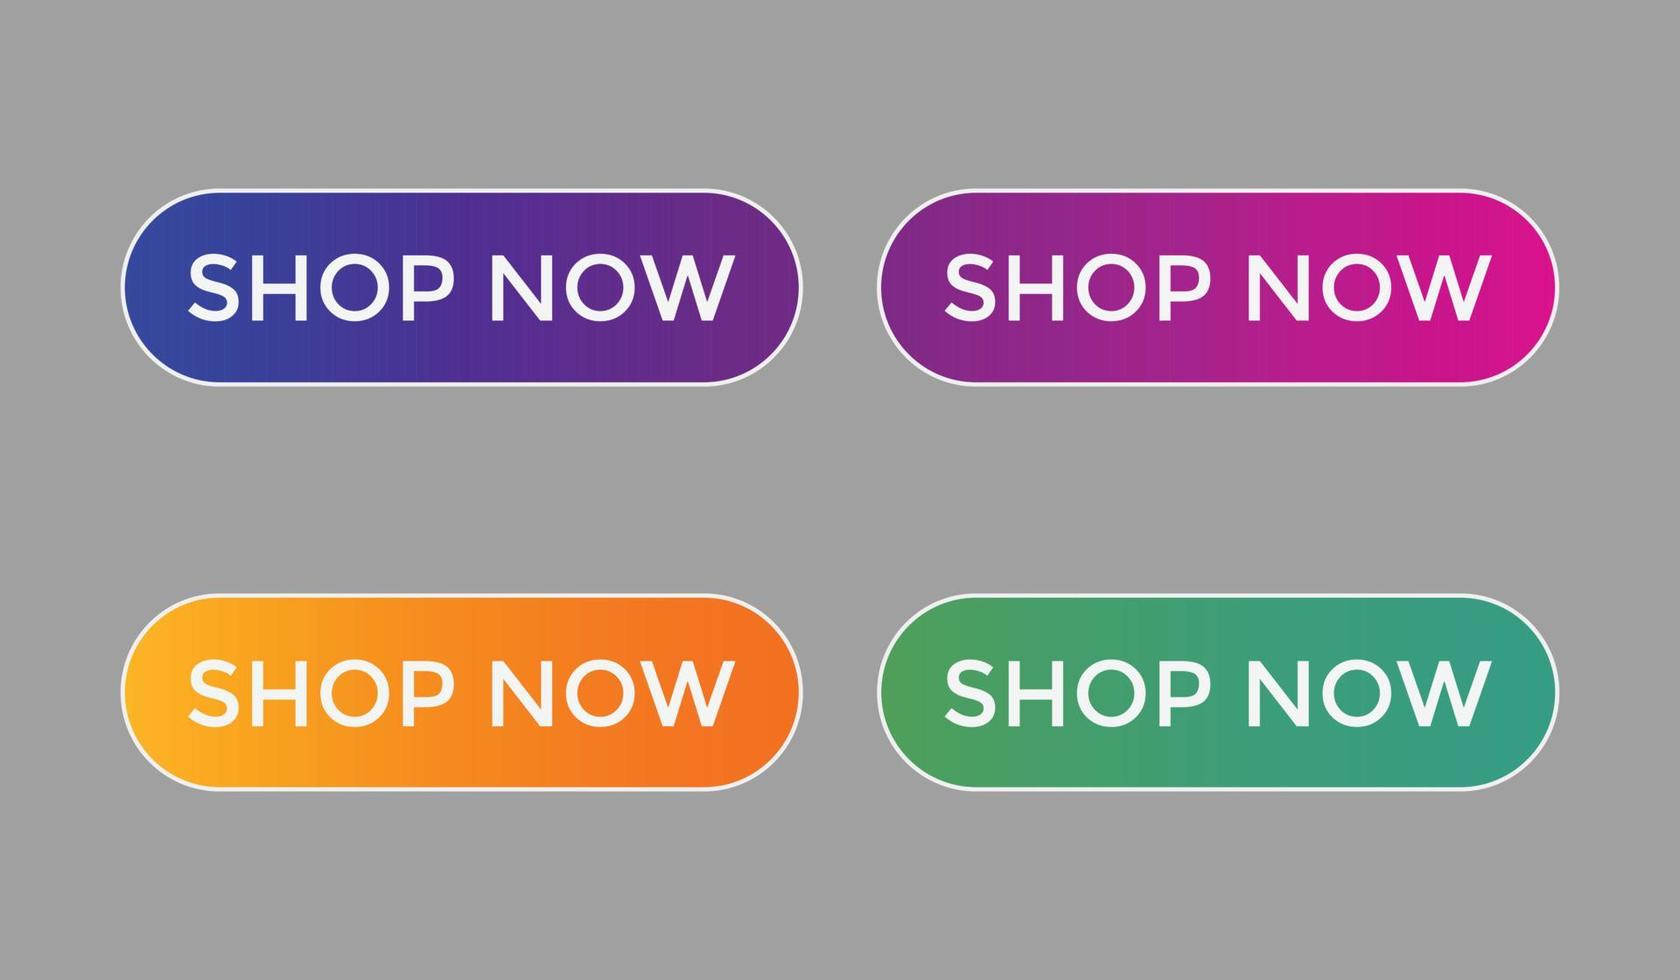 acquista ora testo pulsanti web etichetta icona pulsante web e-commerce acquista o acquista vettore